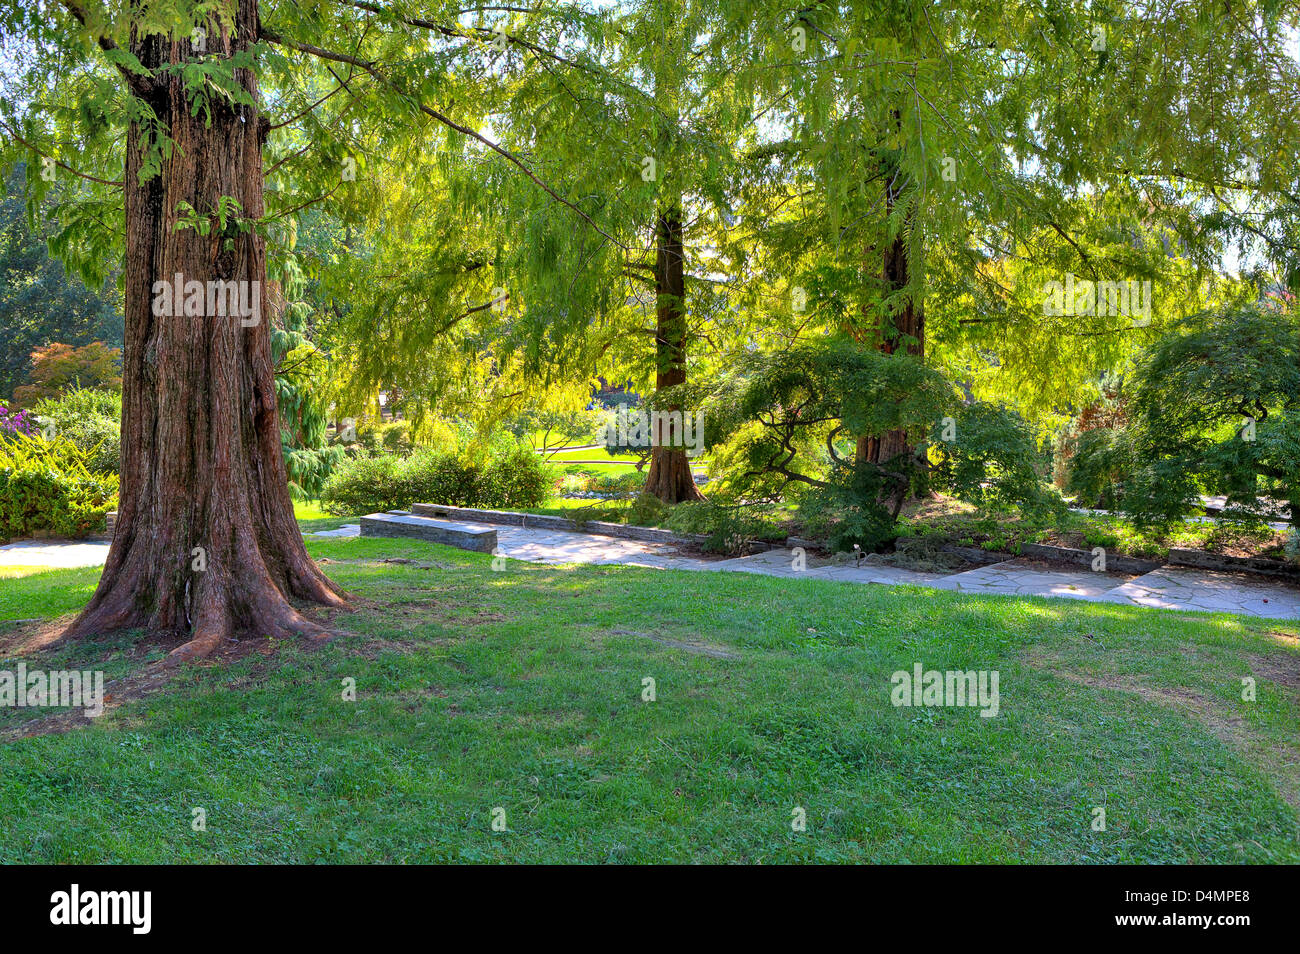 Big brown tronco di albero sul piccolo prato verde tra lussureggianti alberi a parte botanici del famoso parco del Valentino a Torino, Italia. Foto Stock